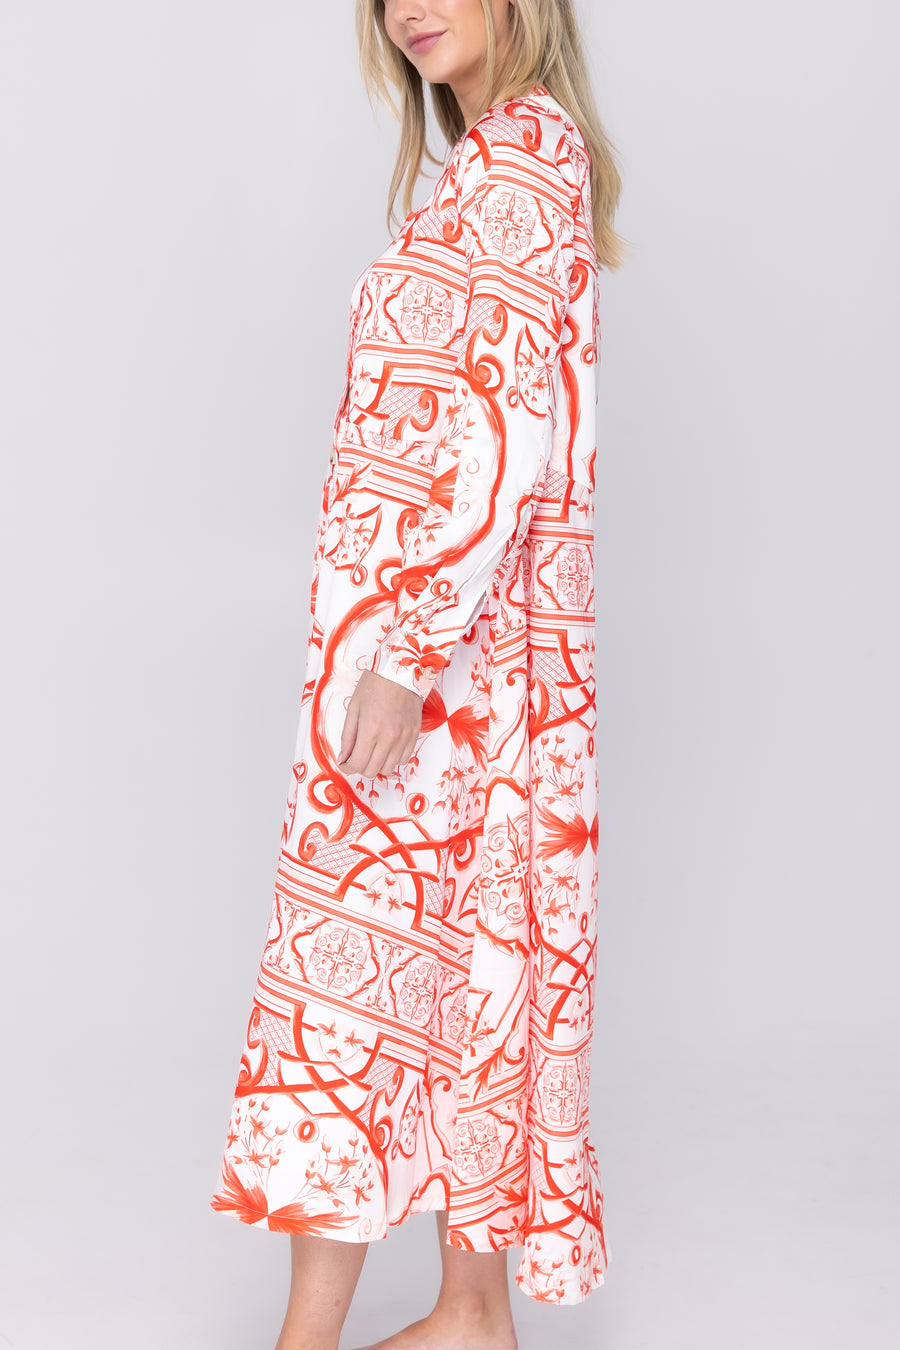 ALINA DRESS (WHITE/RED) 49"